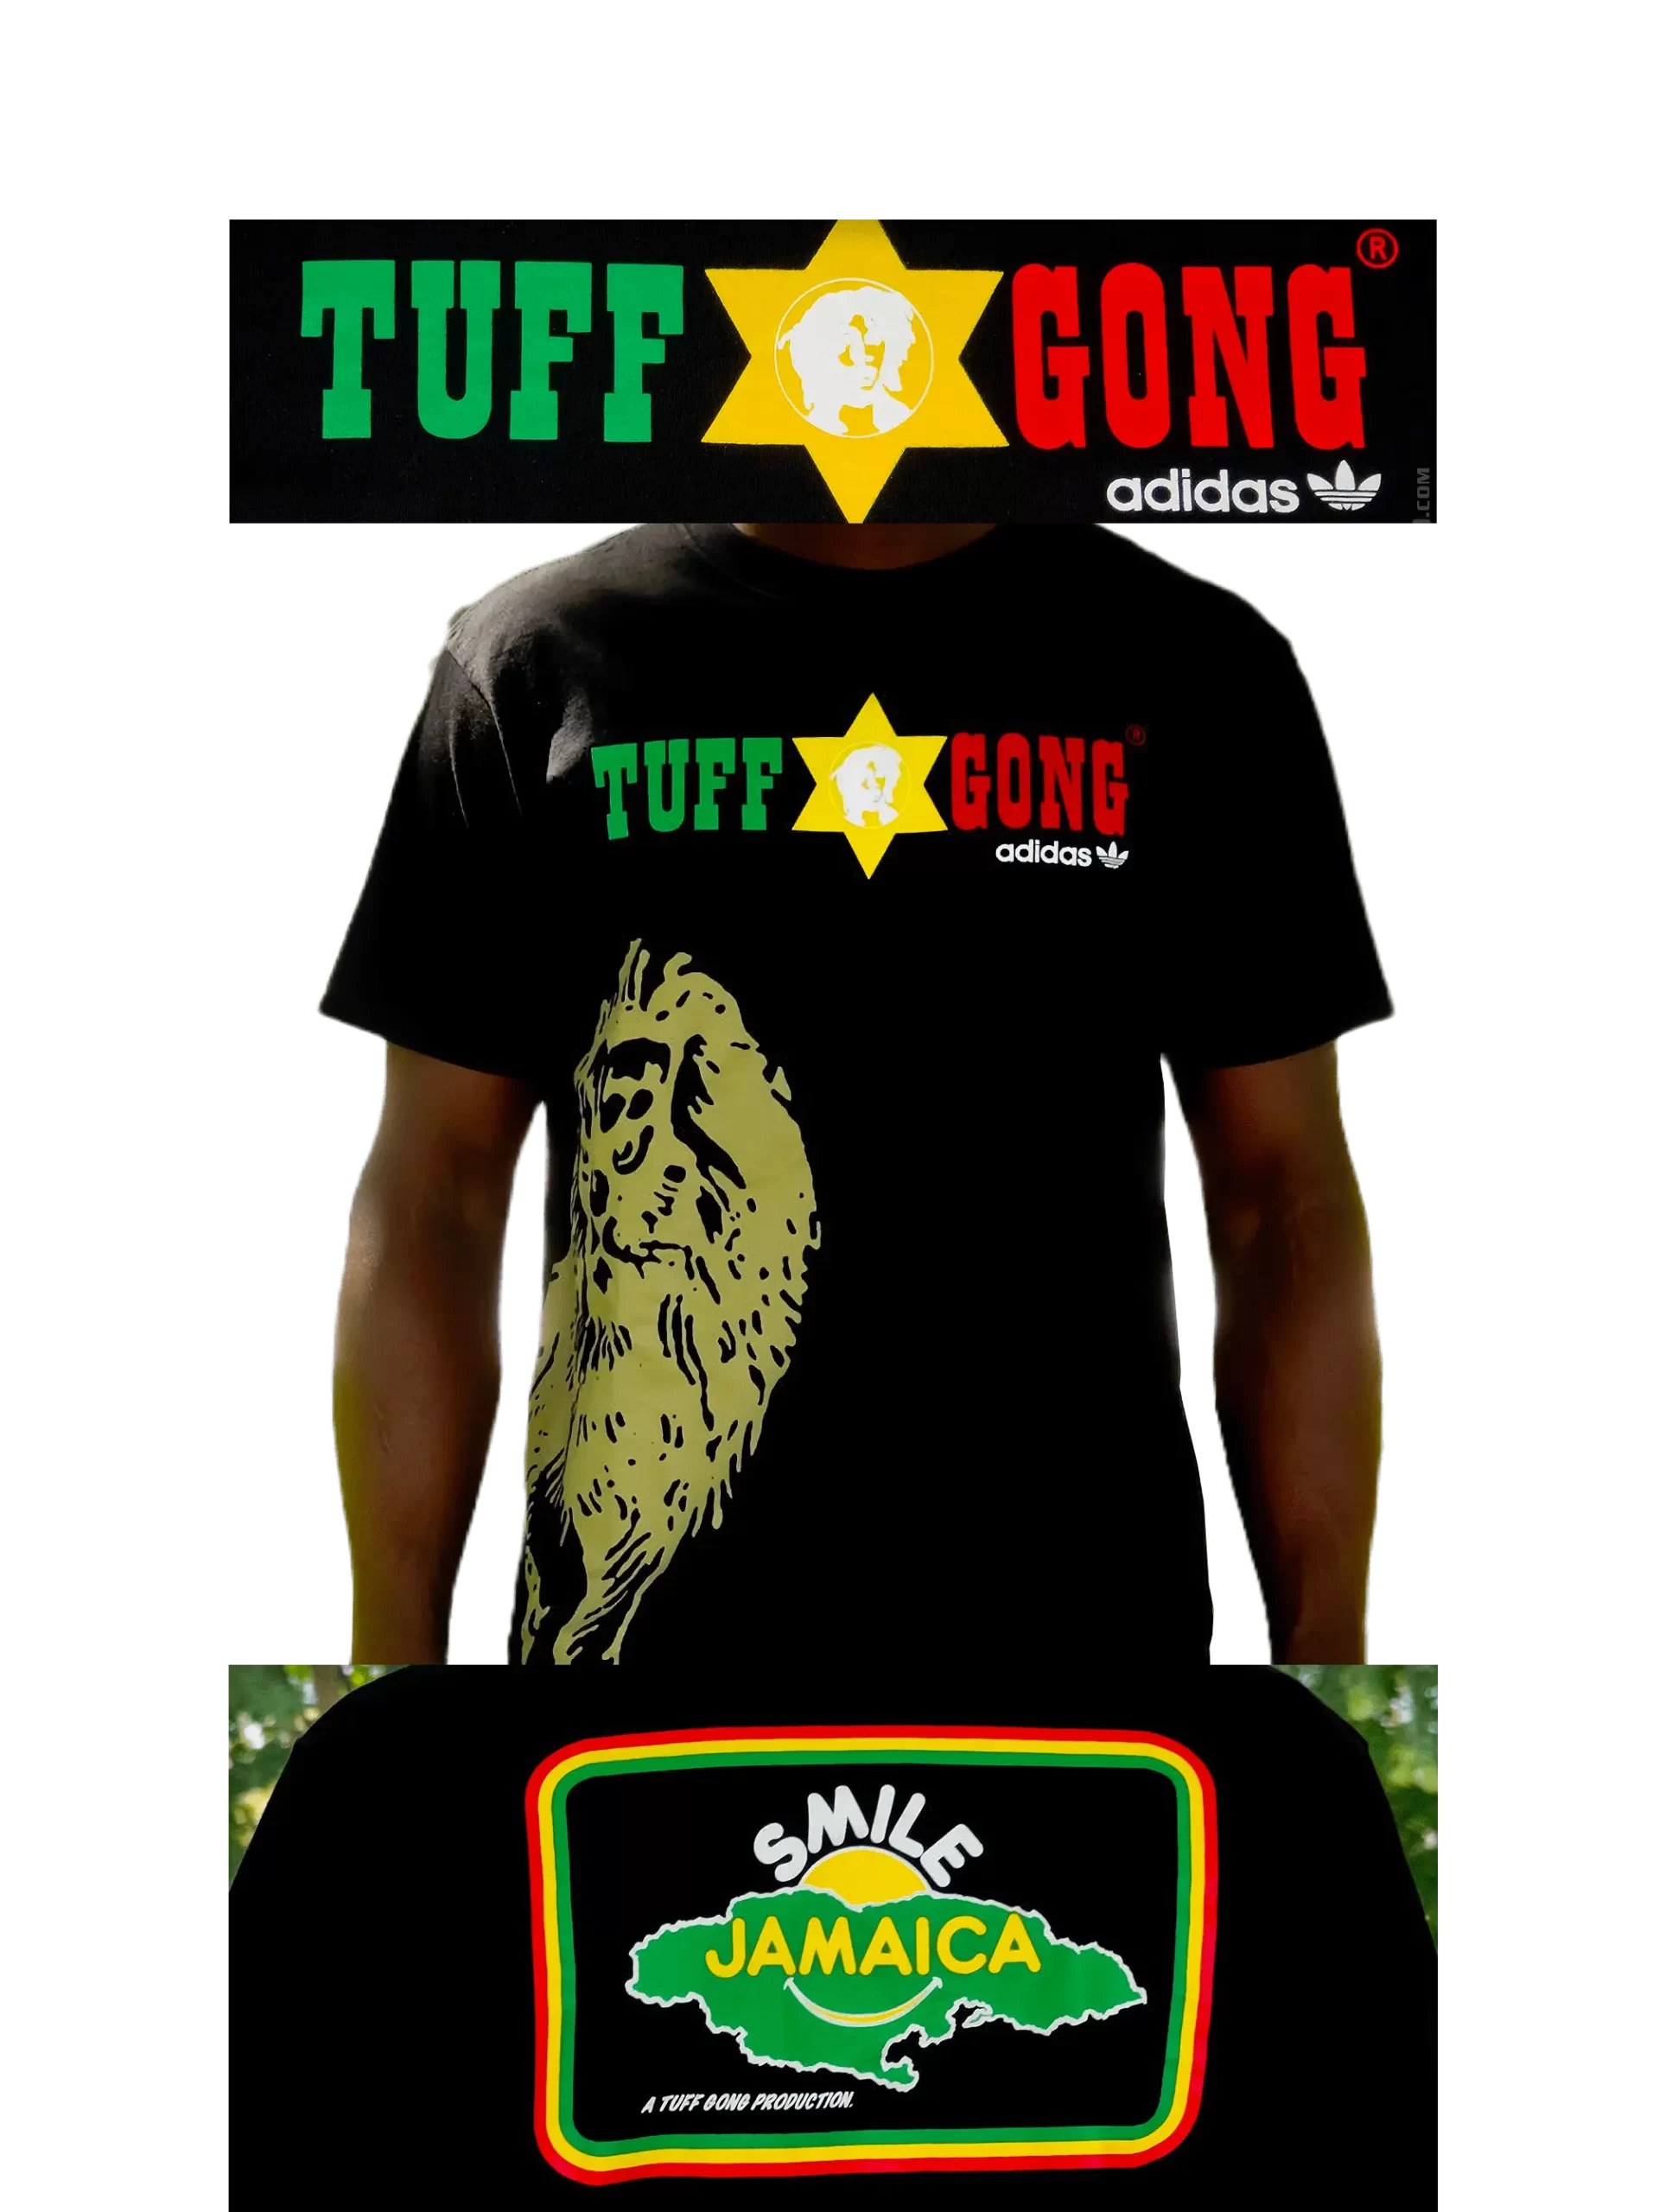 Men's 2007 Bob Marley SMILE Tuff Gong T-Shirt by Adidas: Fine (EnLawded.com file #lmchk82749ip2y125209kg9st)